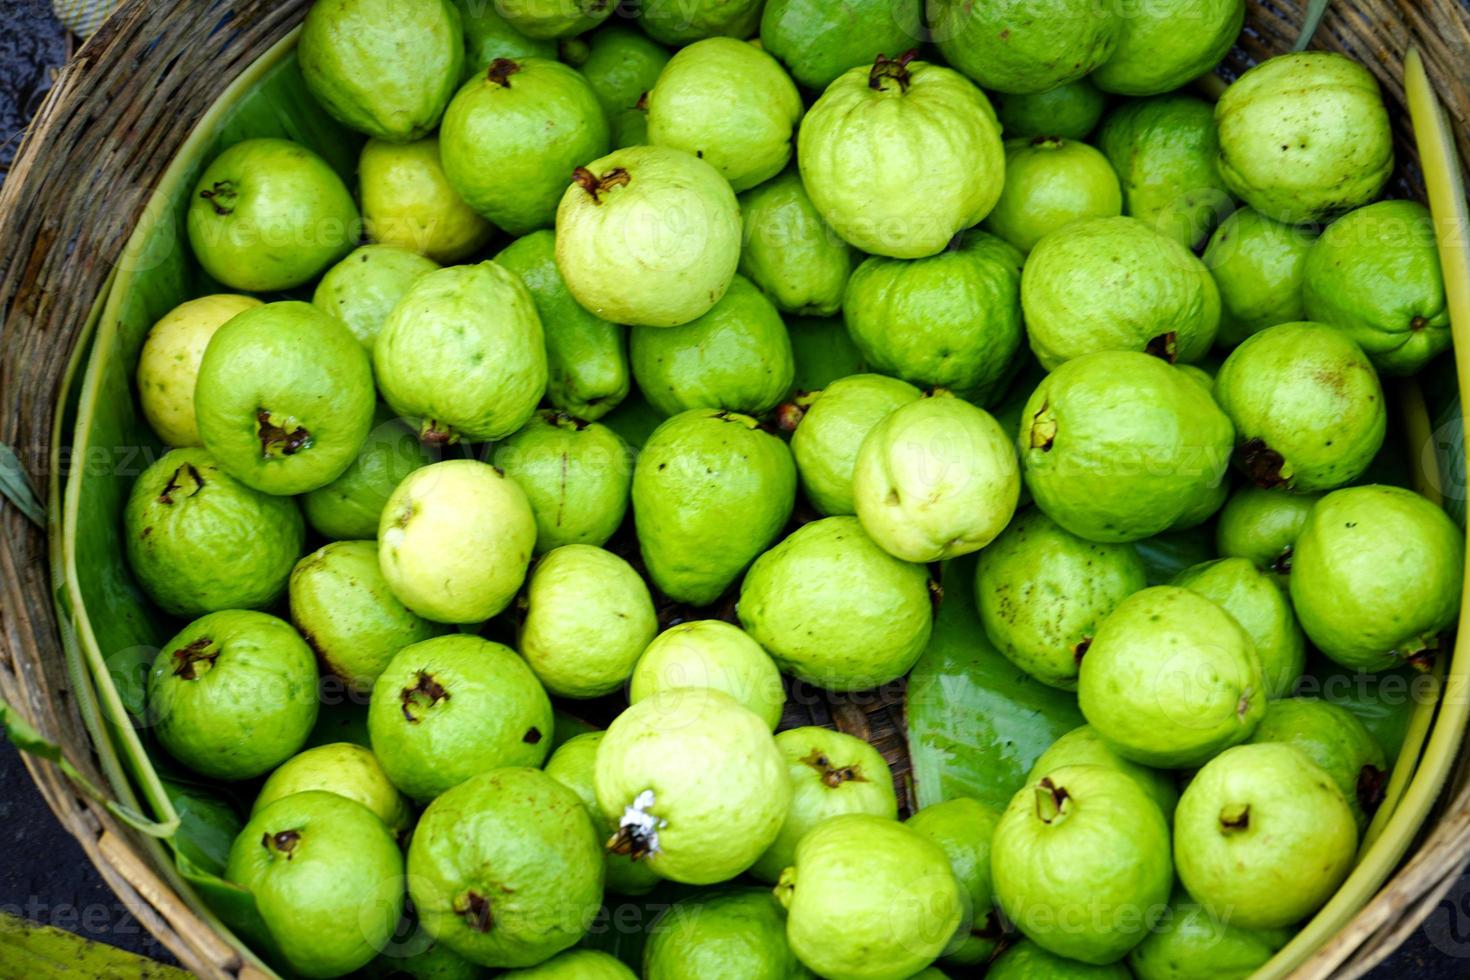 baruipur speciaal guava is voor uitverkoop Bij baruipur super markt foto